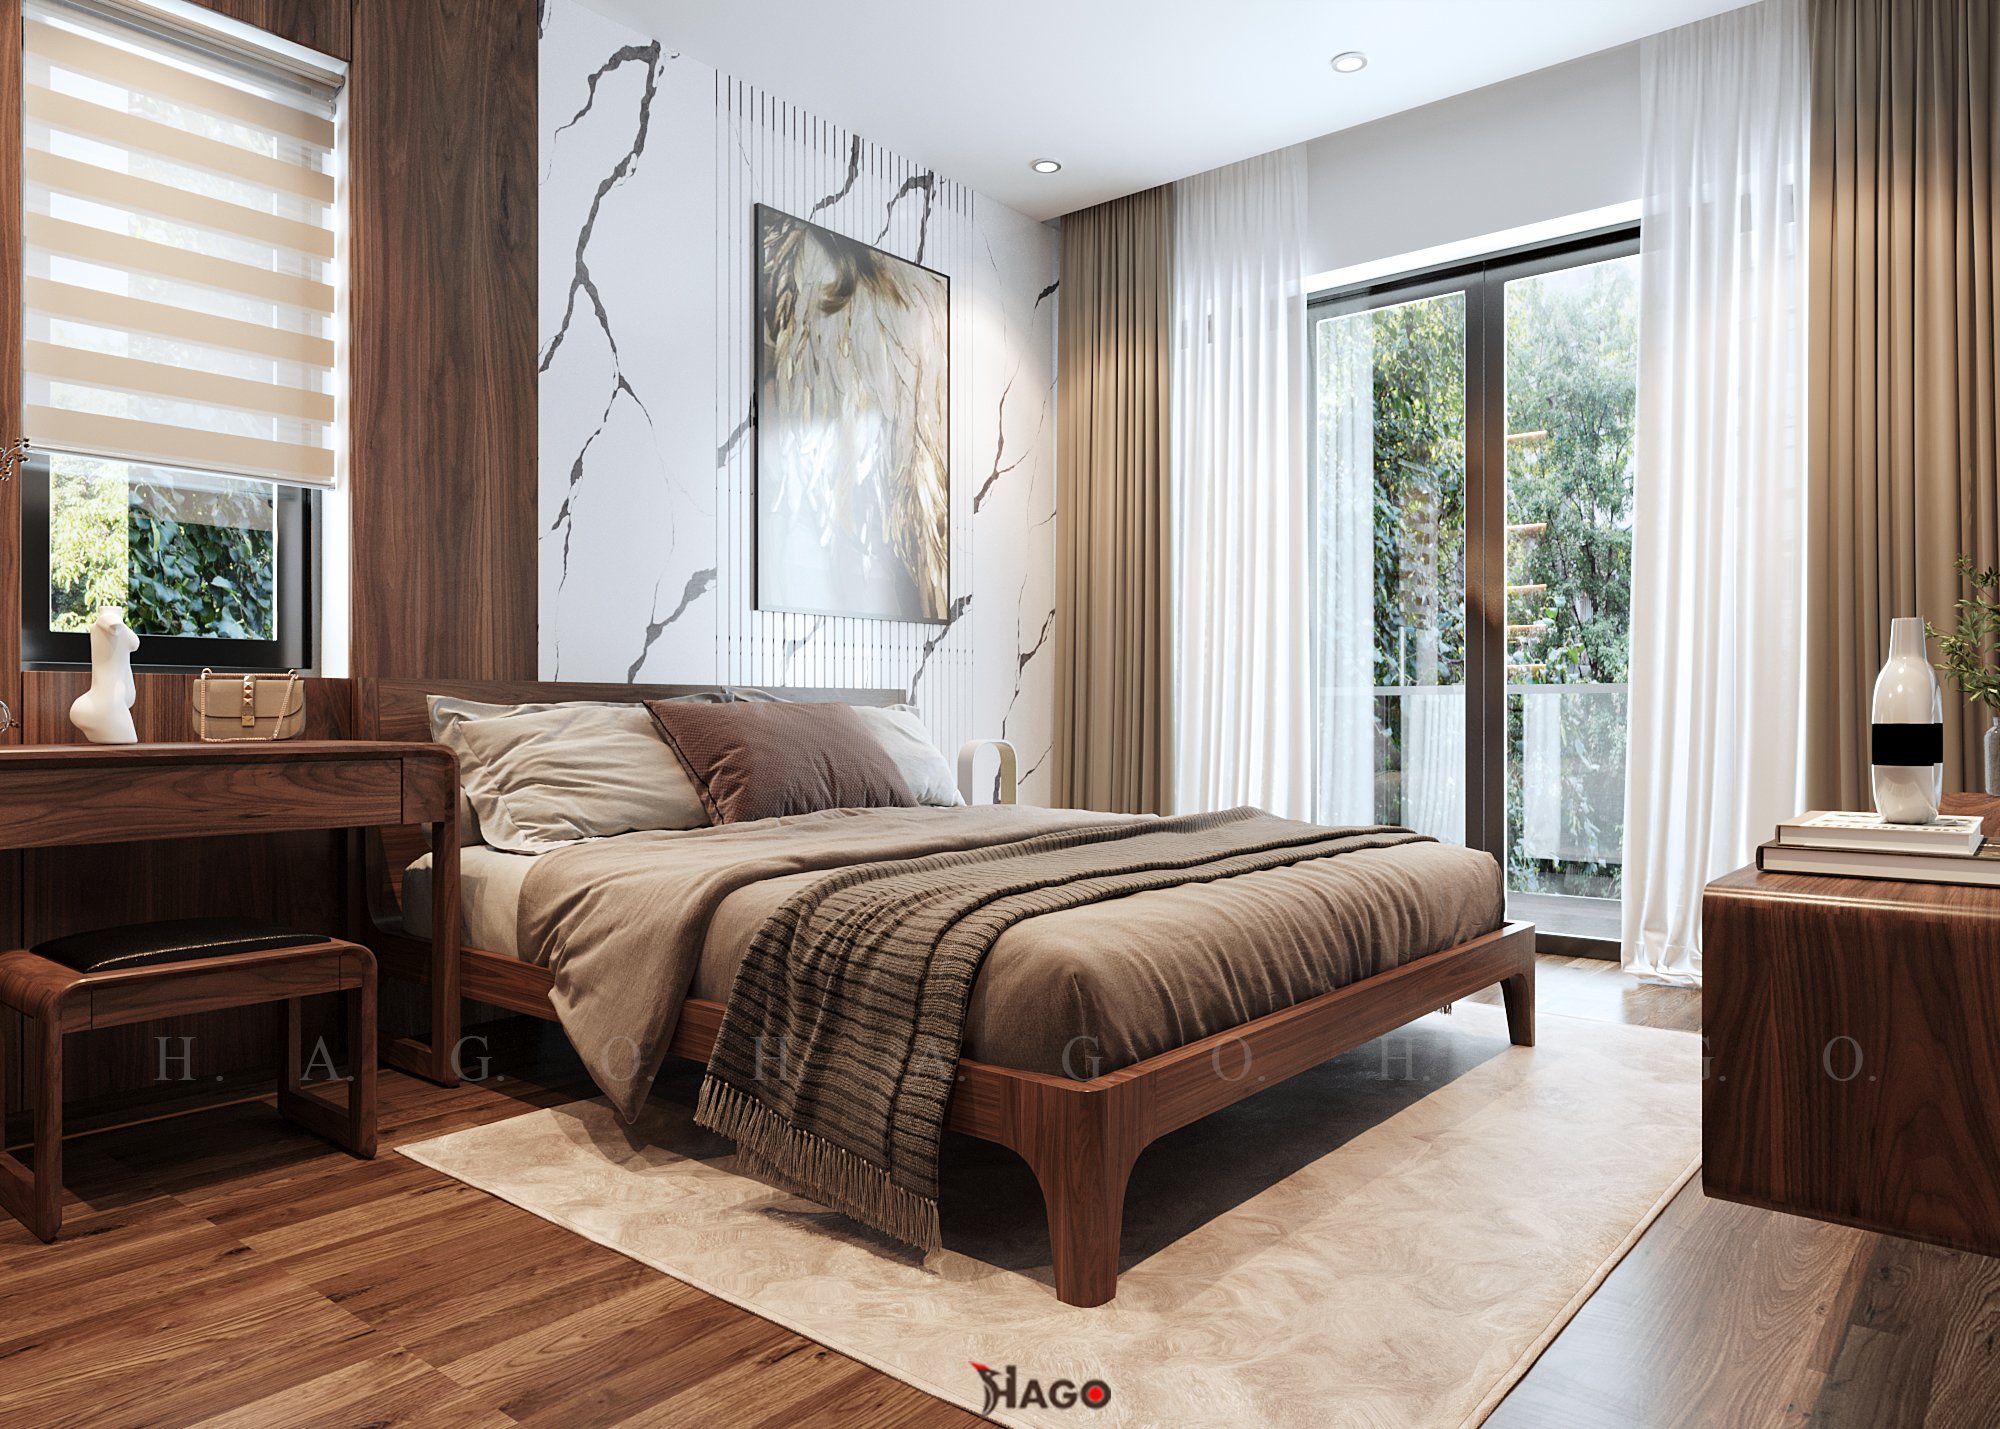 Giường ngủ được làm từ dòng gỗ nhập khẩu cao cấp